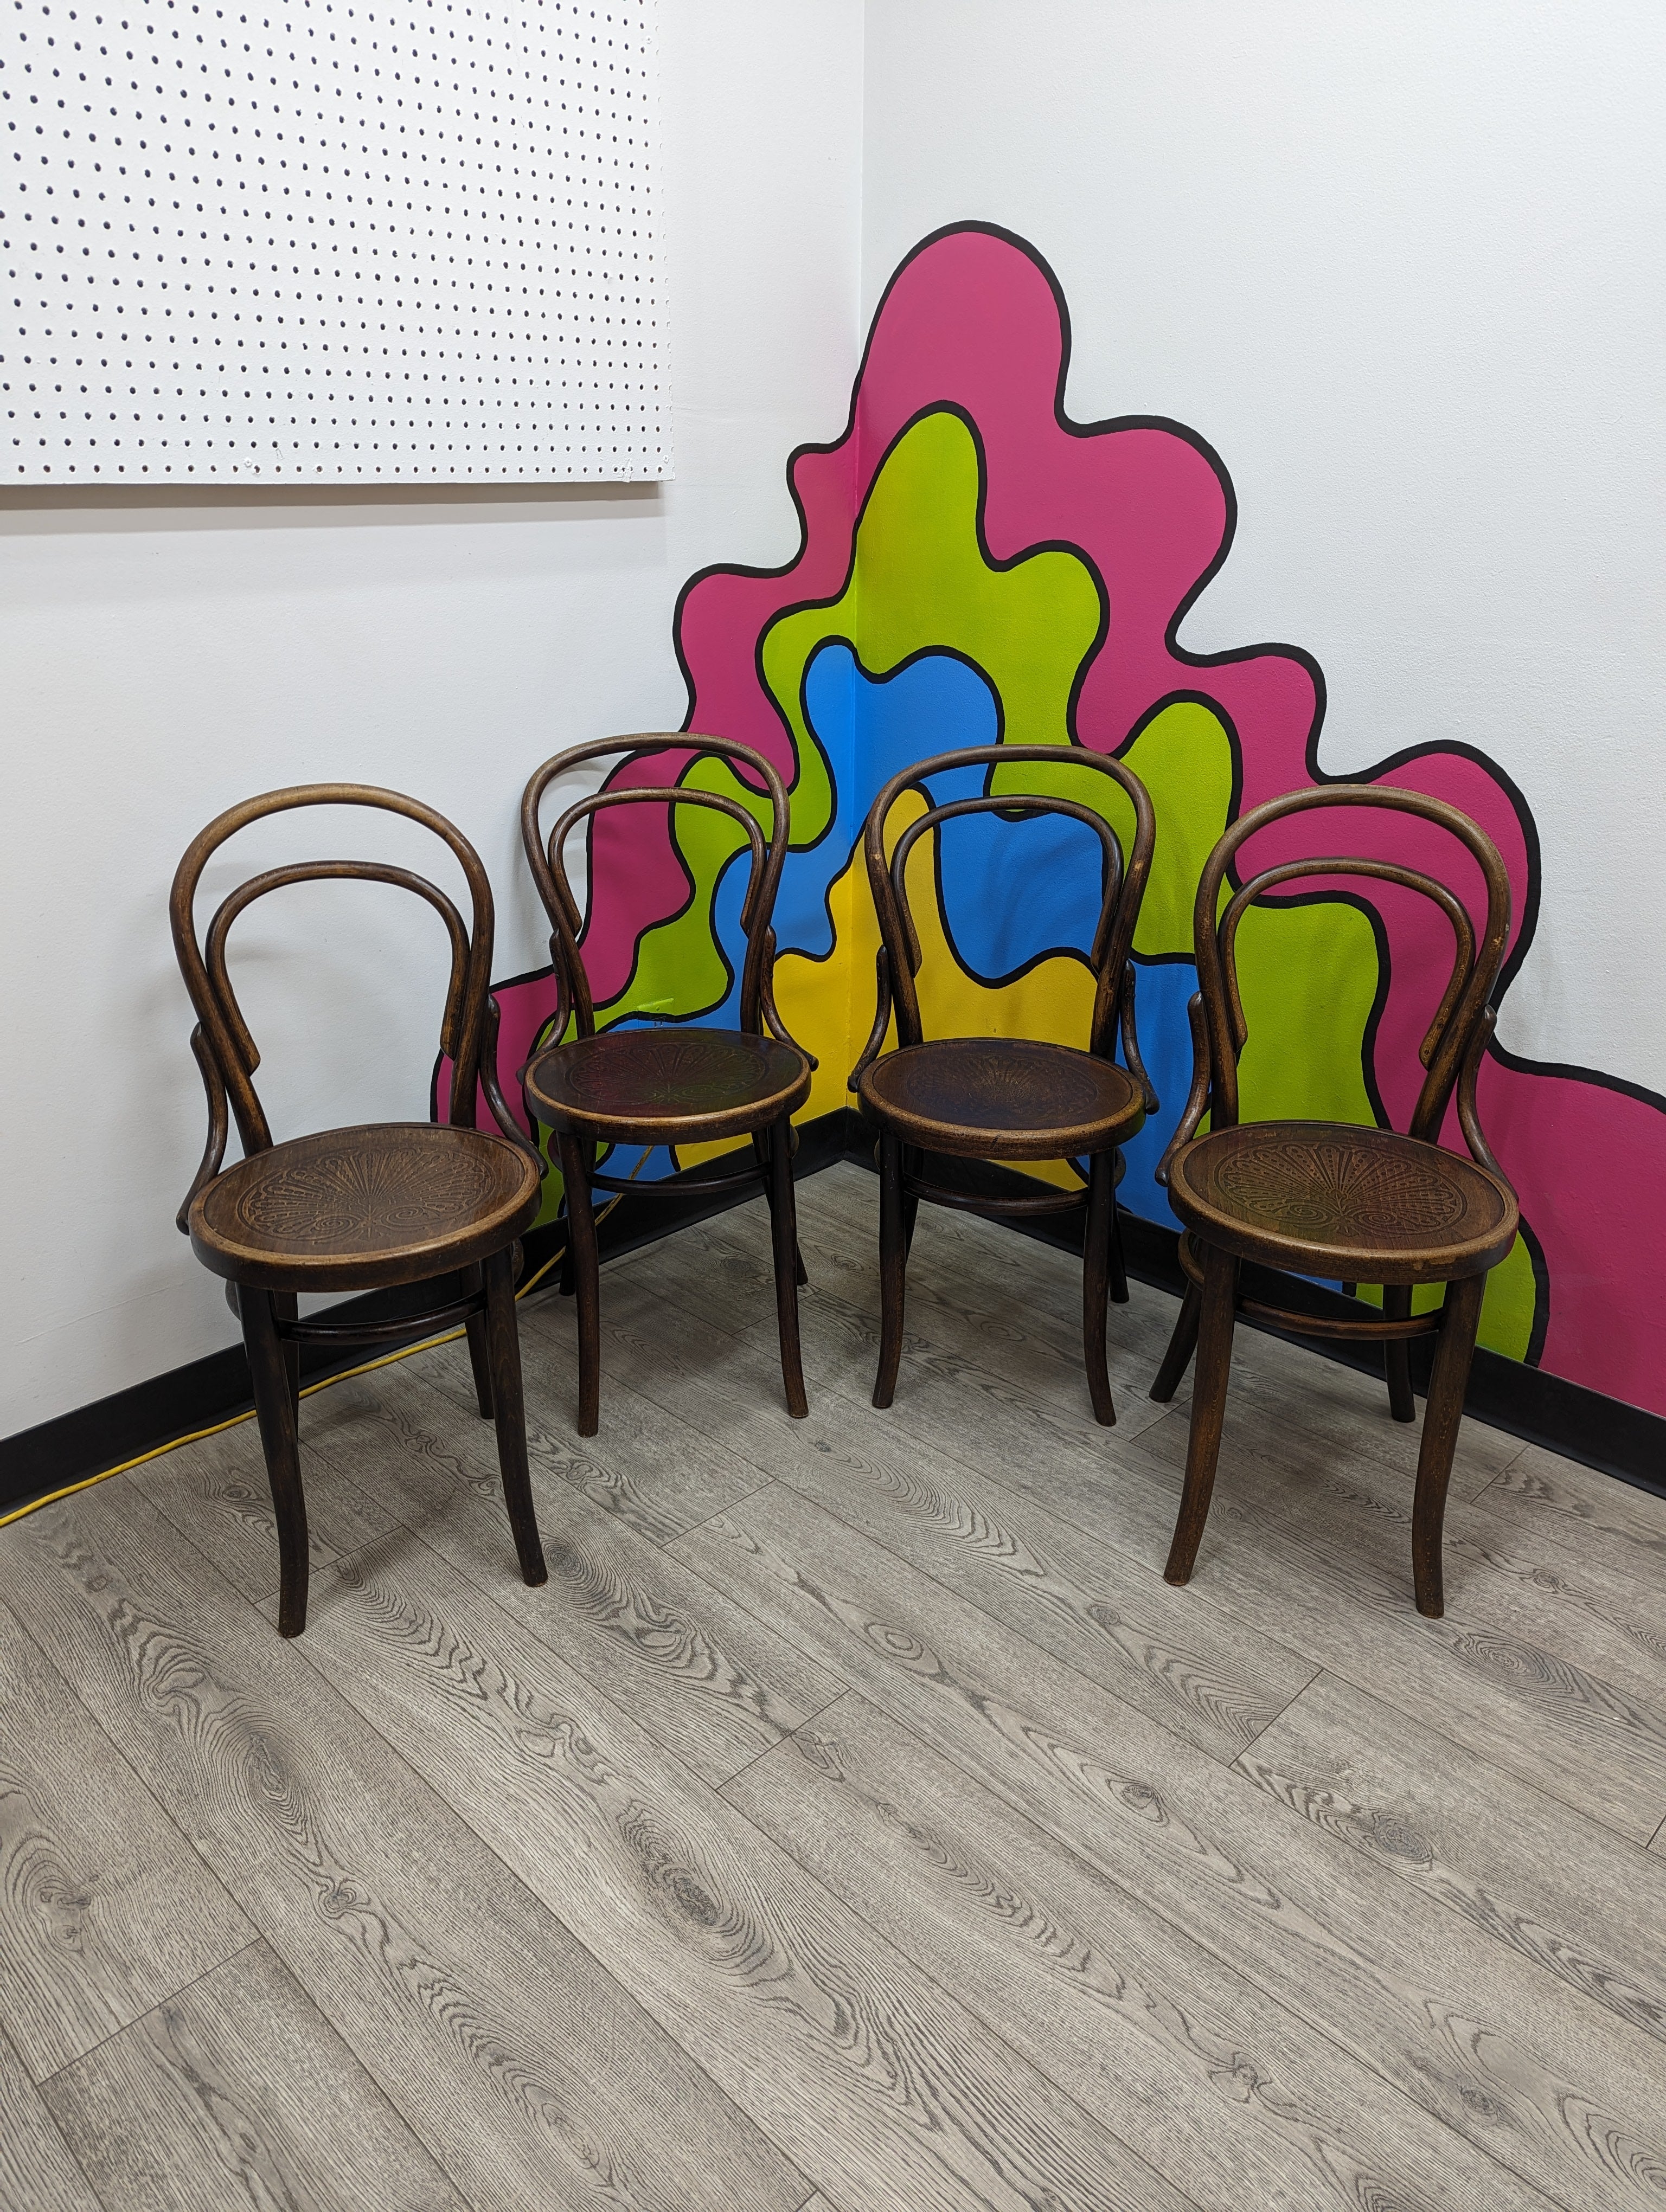 (4) Thonet "Chair 14" Design Chairs